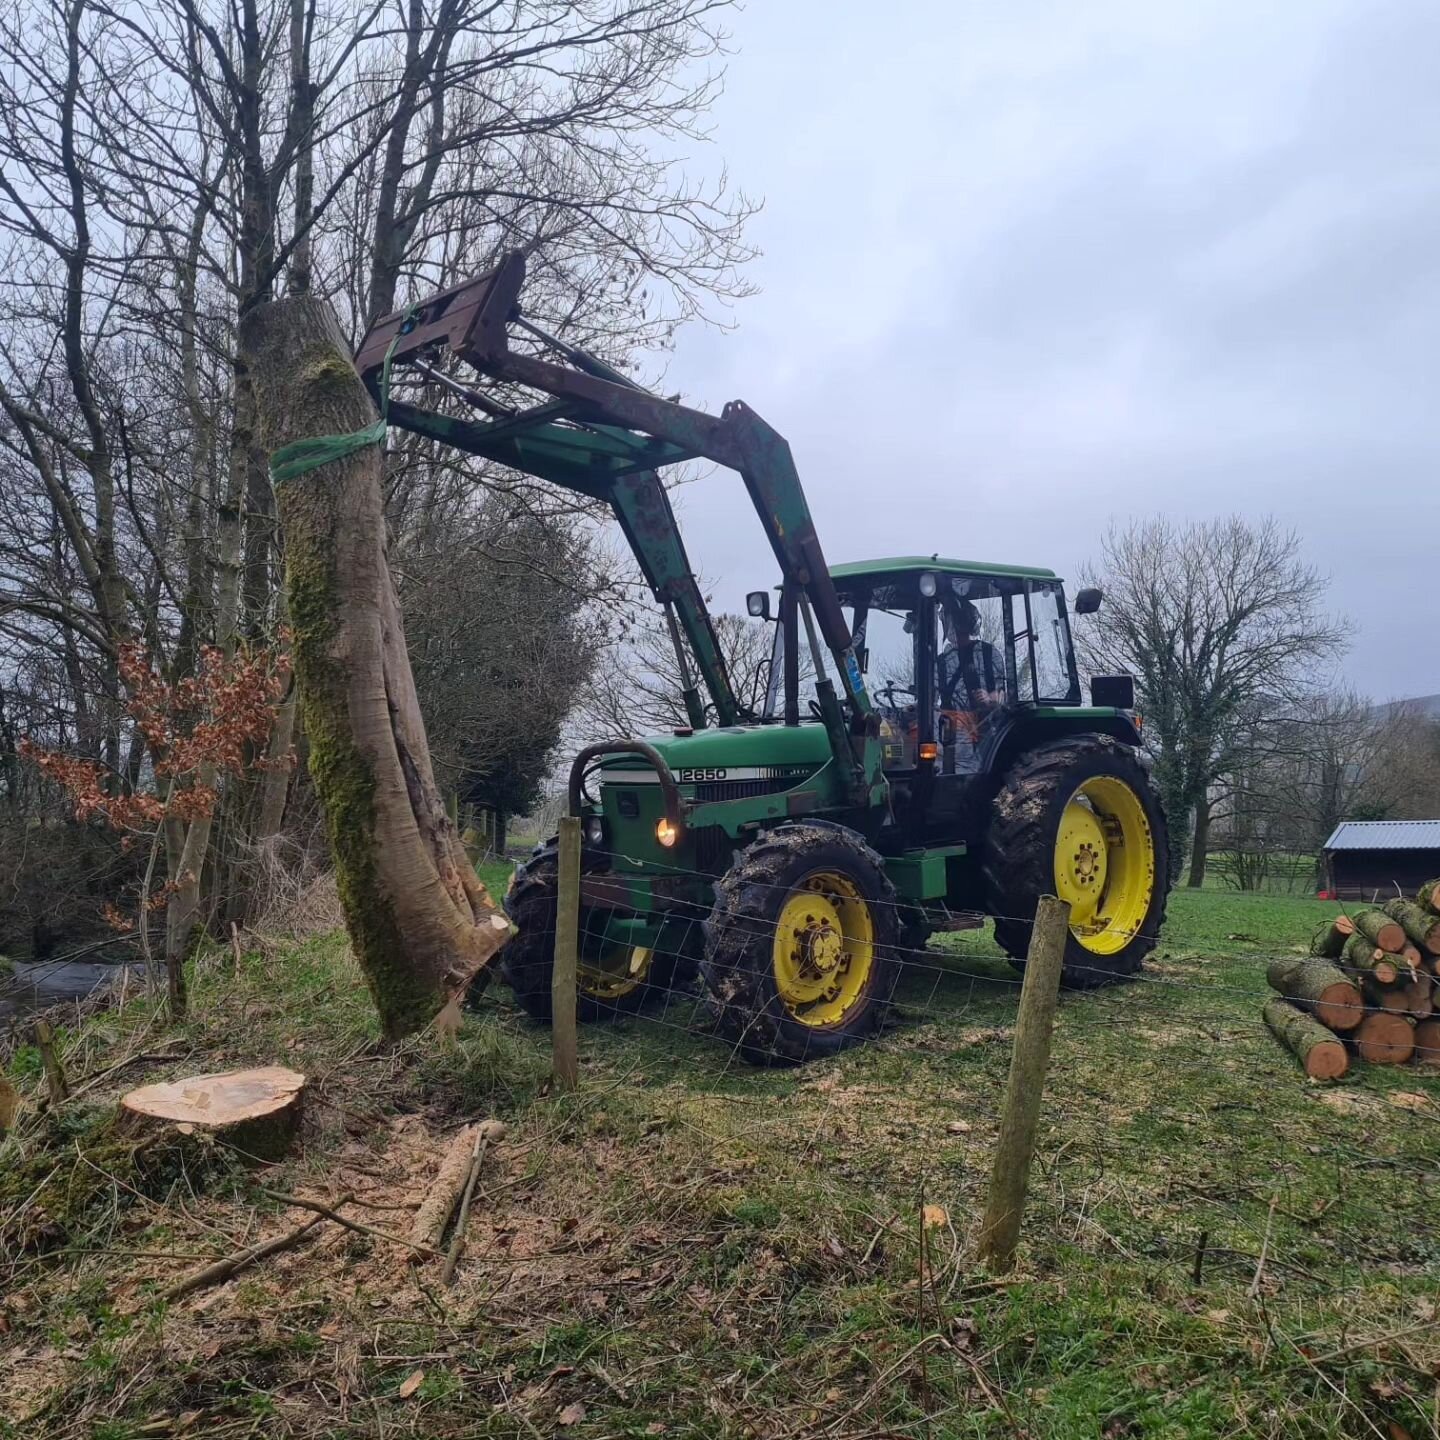 Tractor out earning its keep. More ADB felling in Hope. #treework #treefelling #arboricultural #arborist #tractor #johndeere #hopevalley #peakdistrict #hope